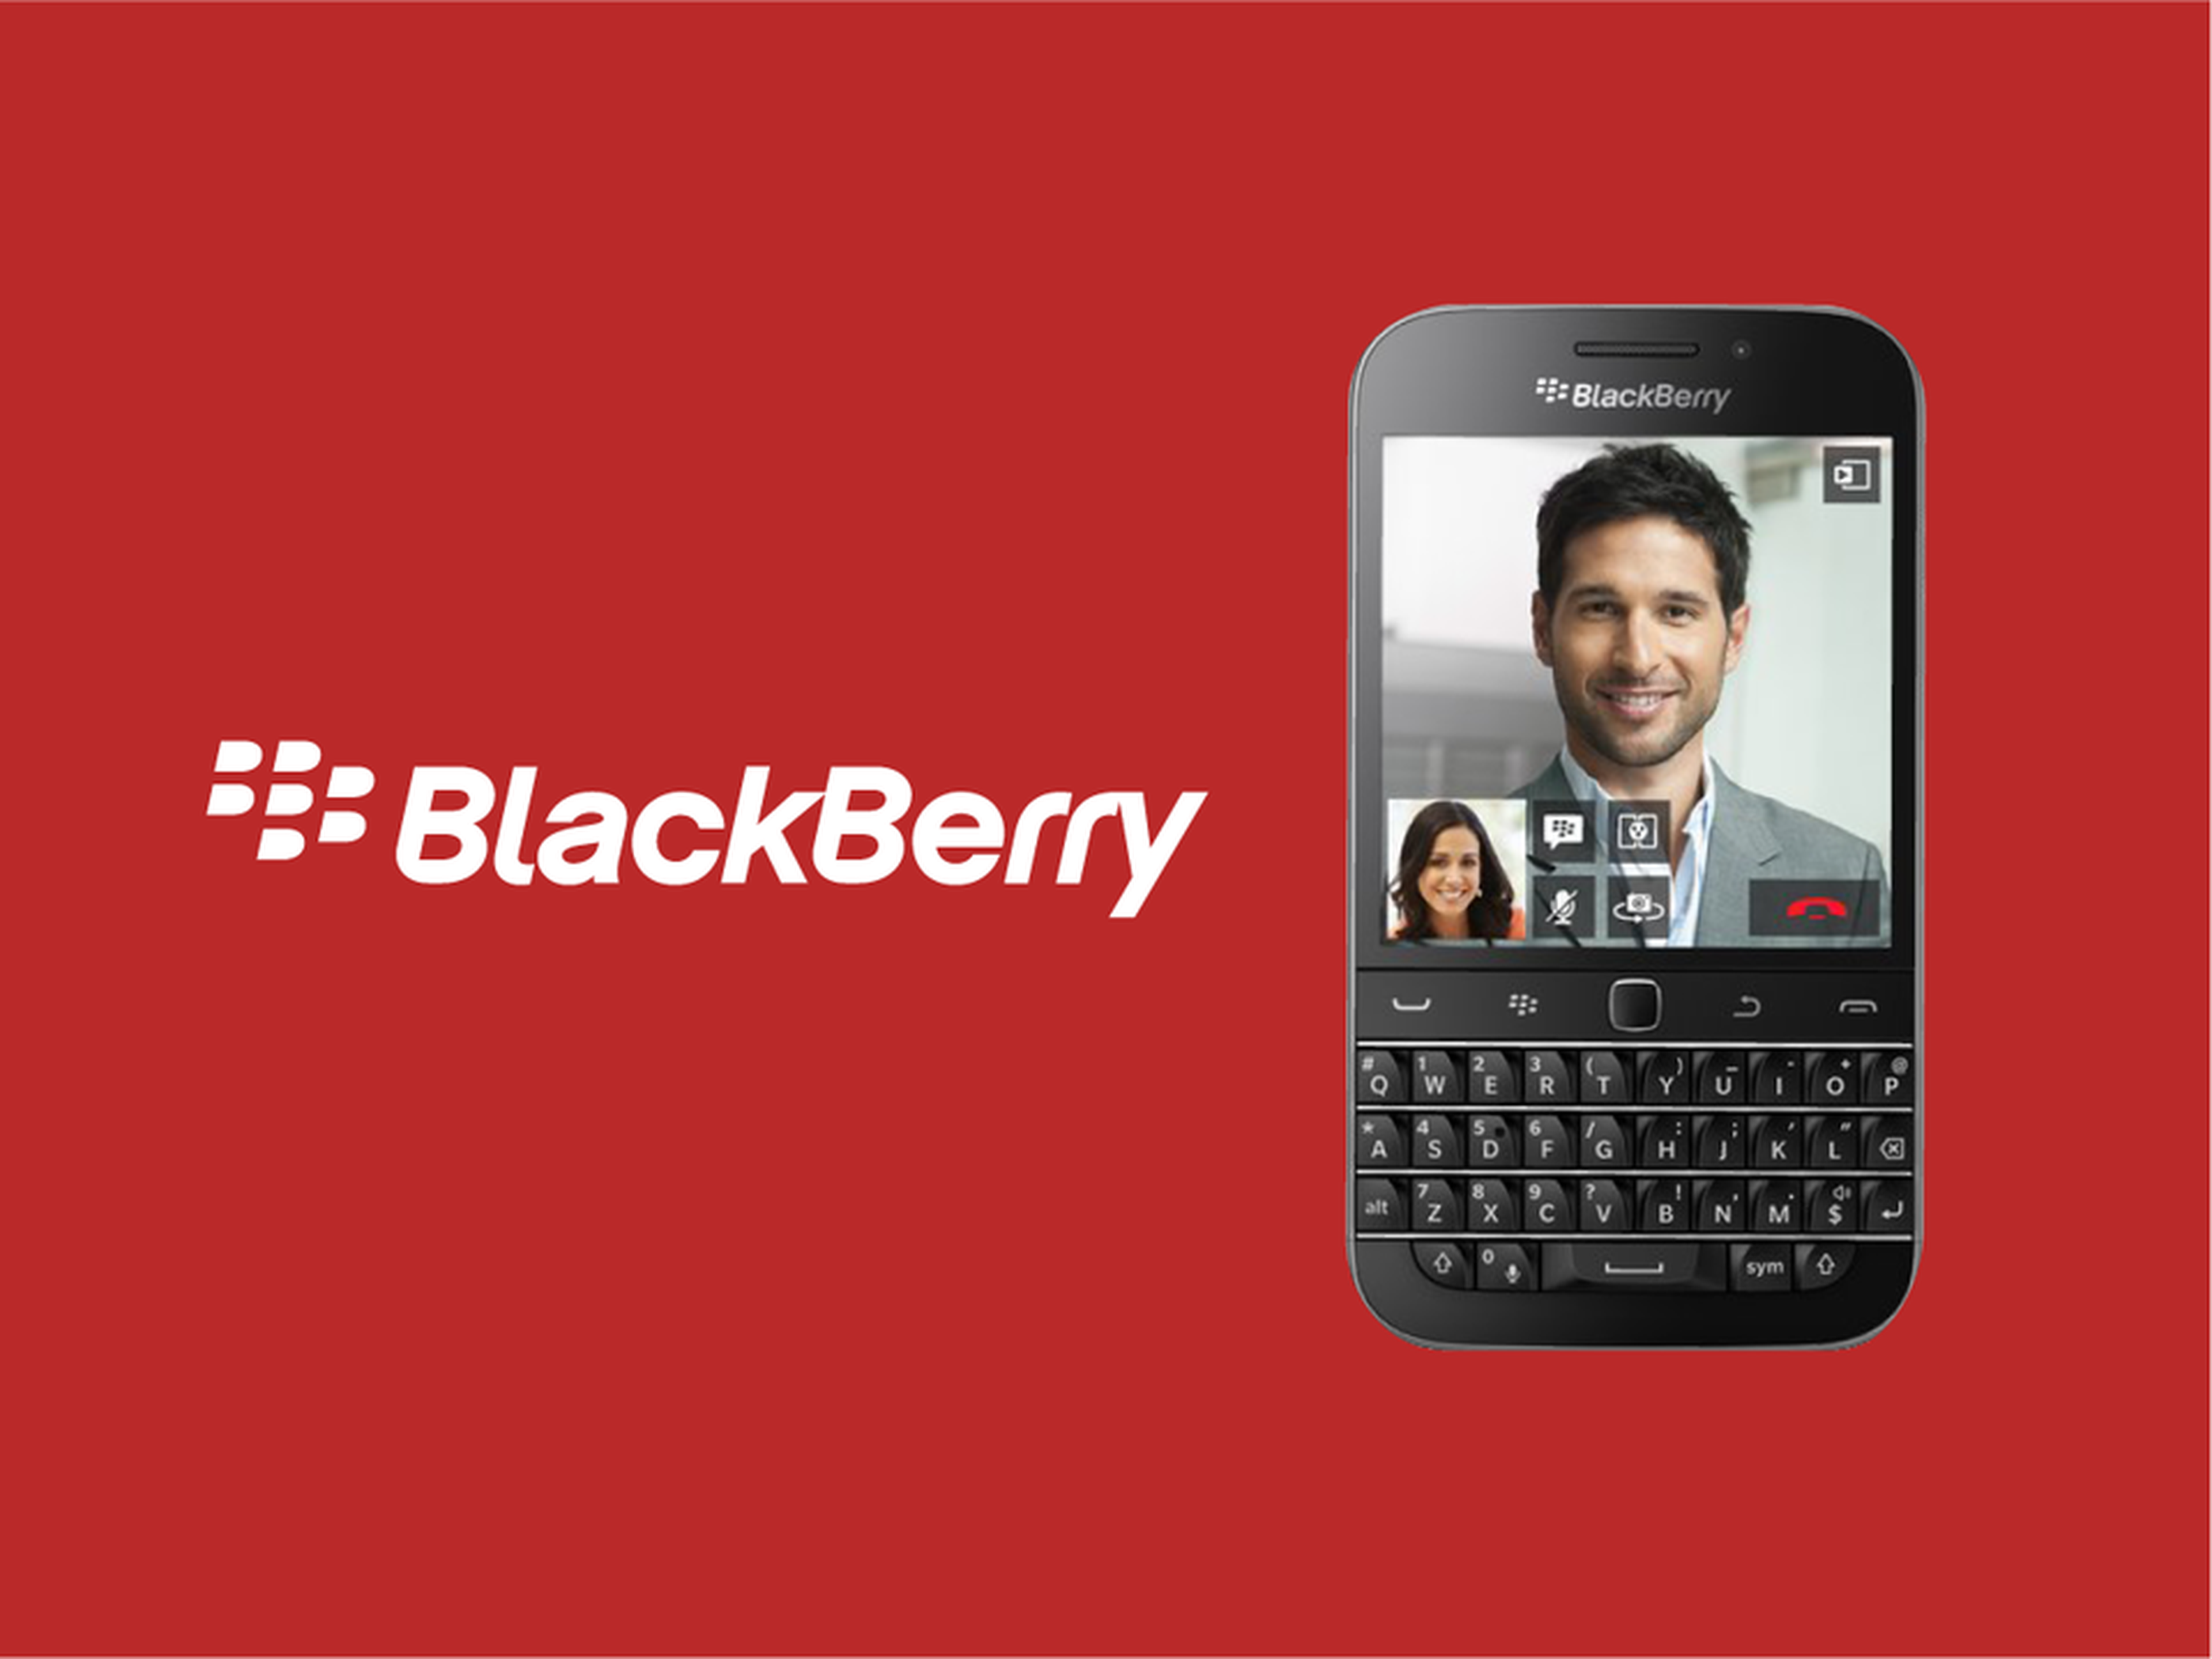 Logo de blackberry junto a dispositivo.